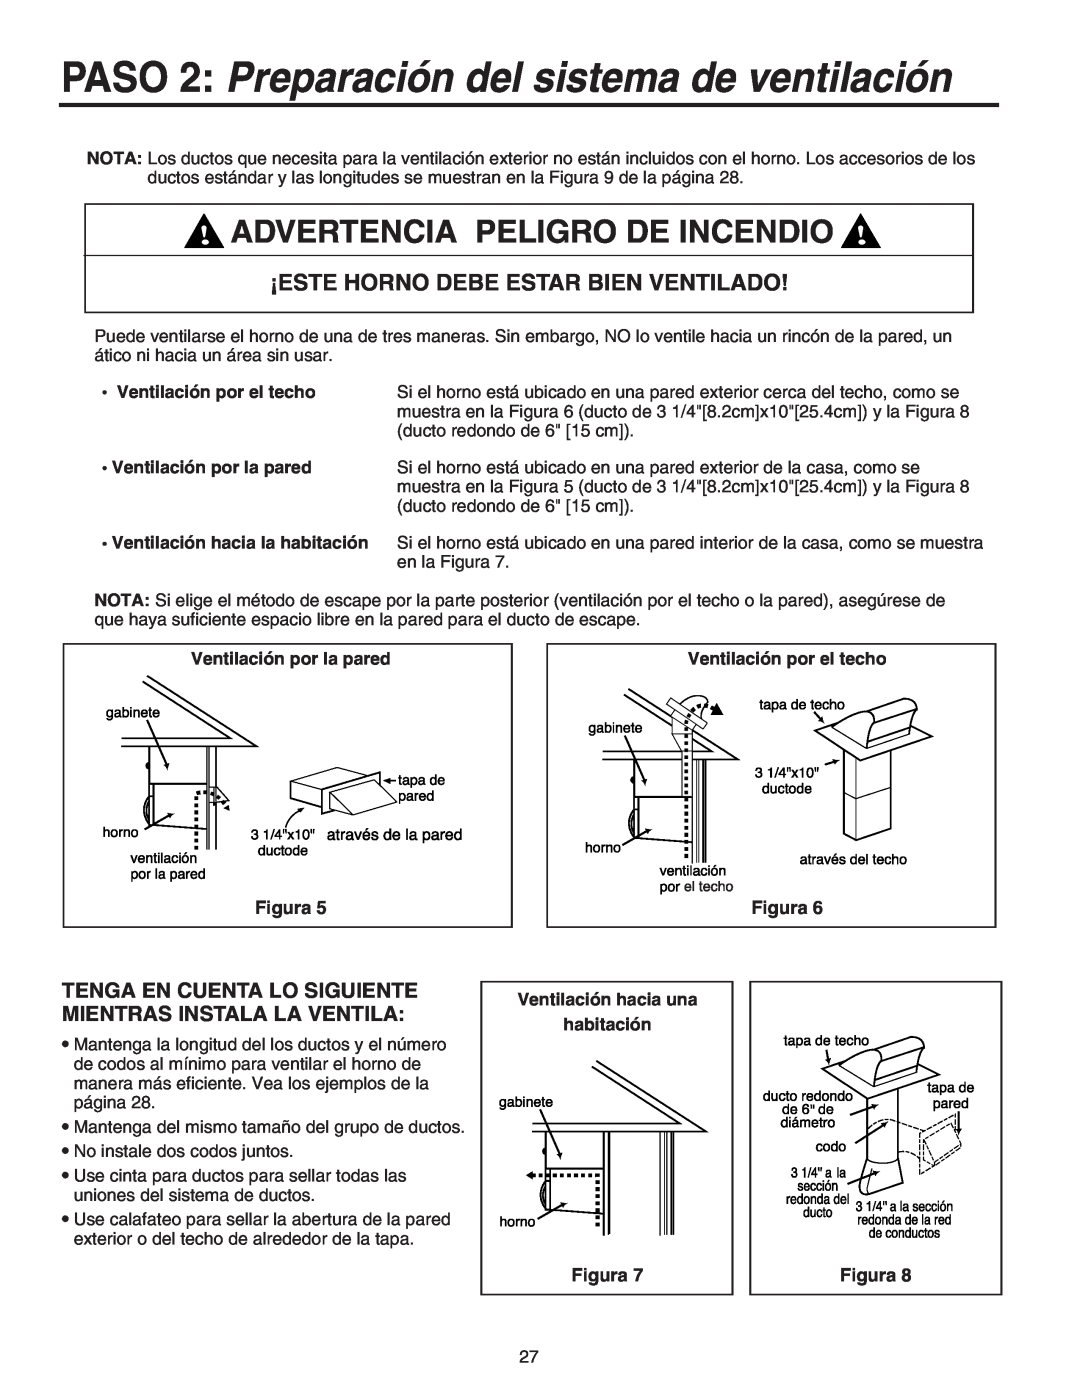 Maytag 8101P641-60 PASO 2 Preparación del sistema de ventilación, Advertencia Peligro De Incendio, Figura 